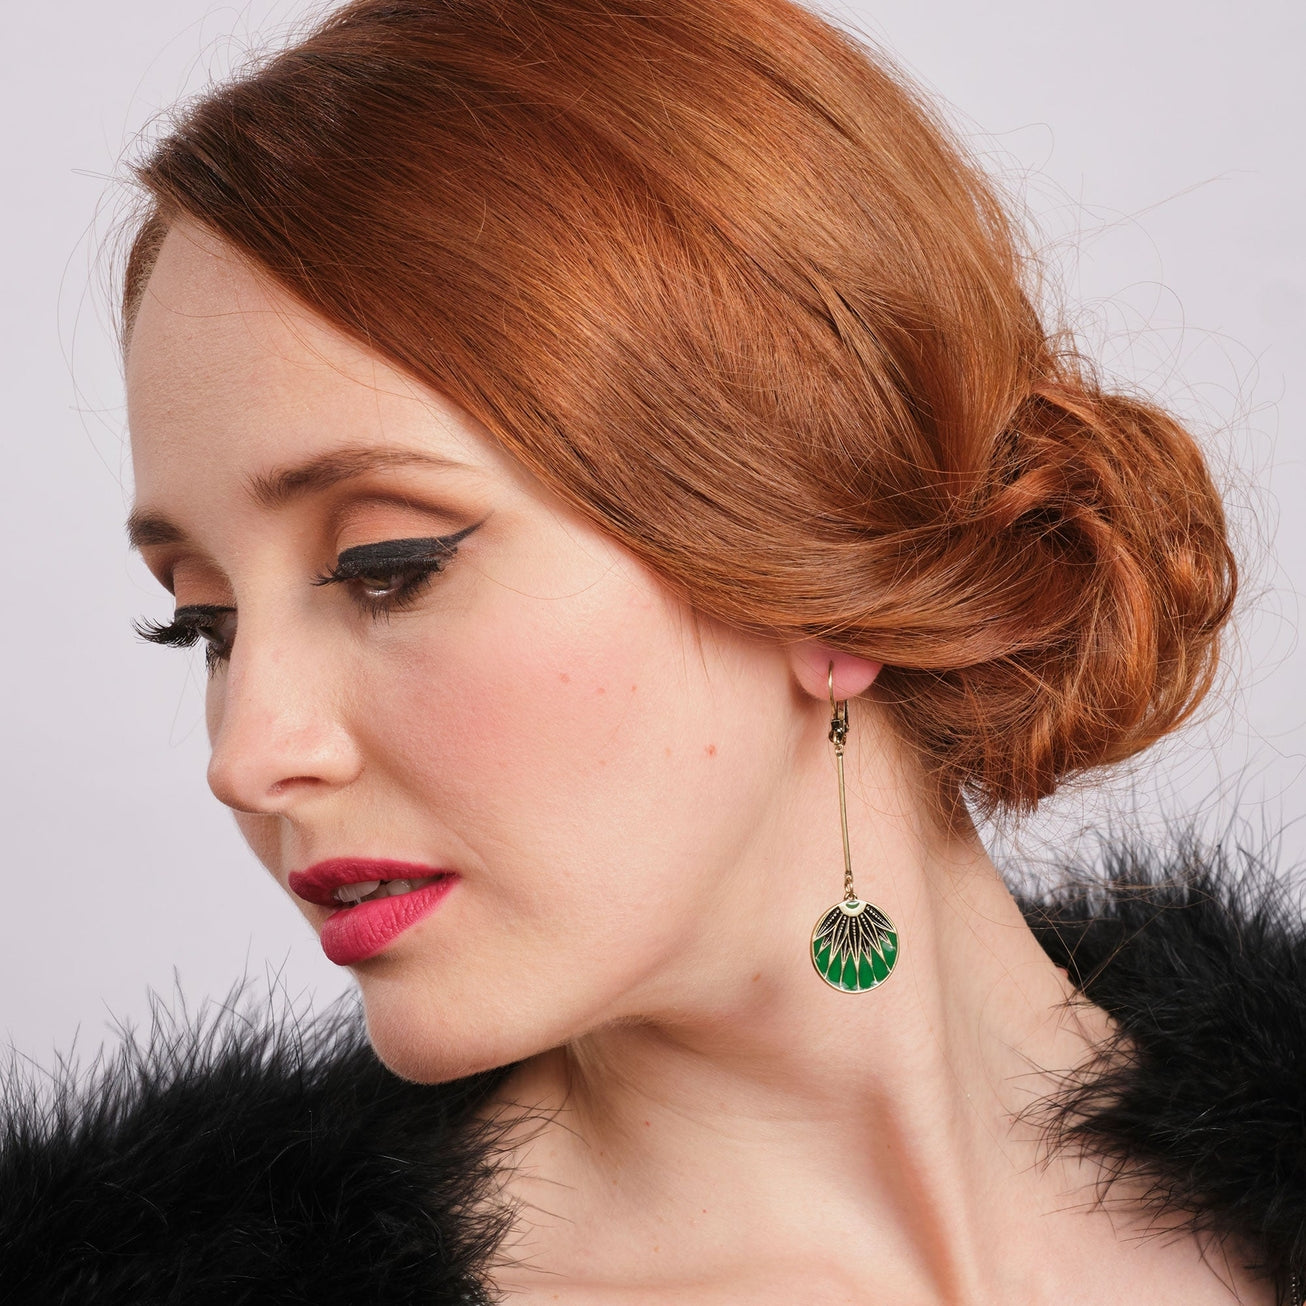 Green Art Deco Drop Earrings